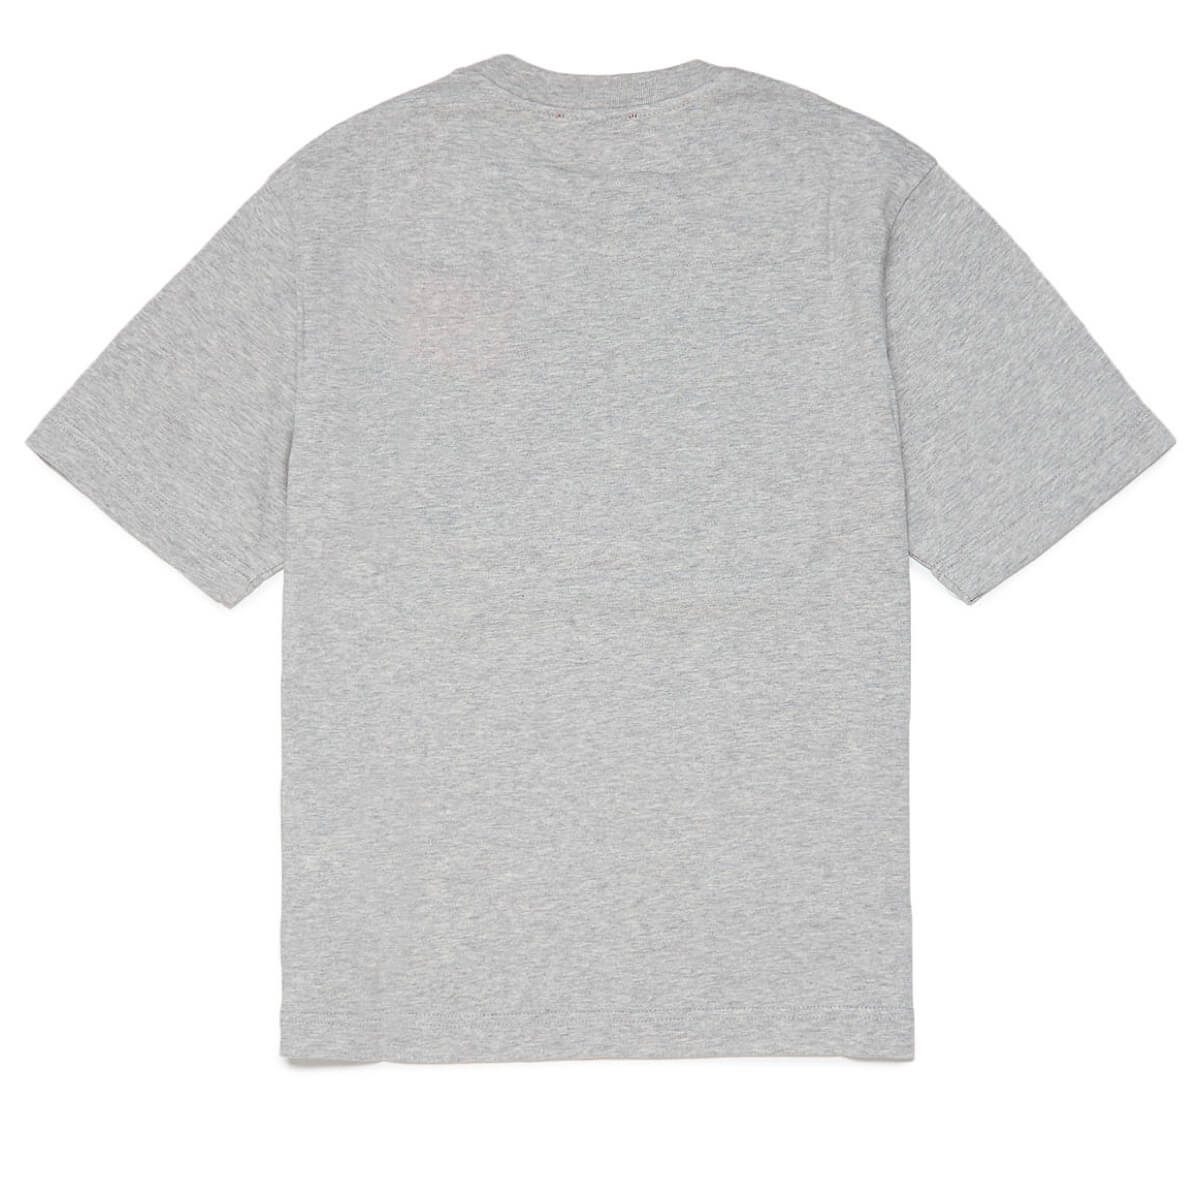 Diesel Boys Grey Twanny Over T-Shirt With Logo